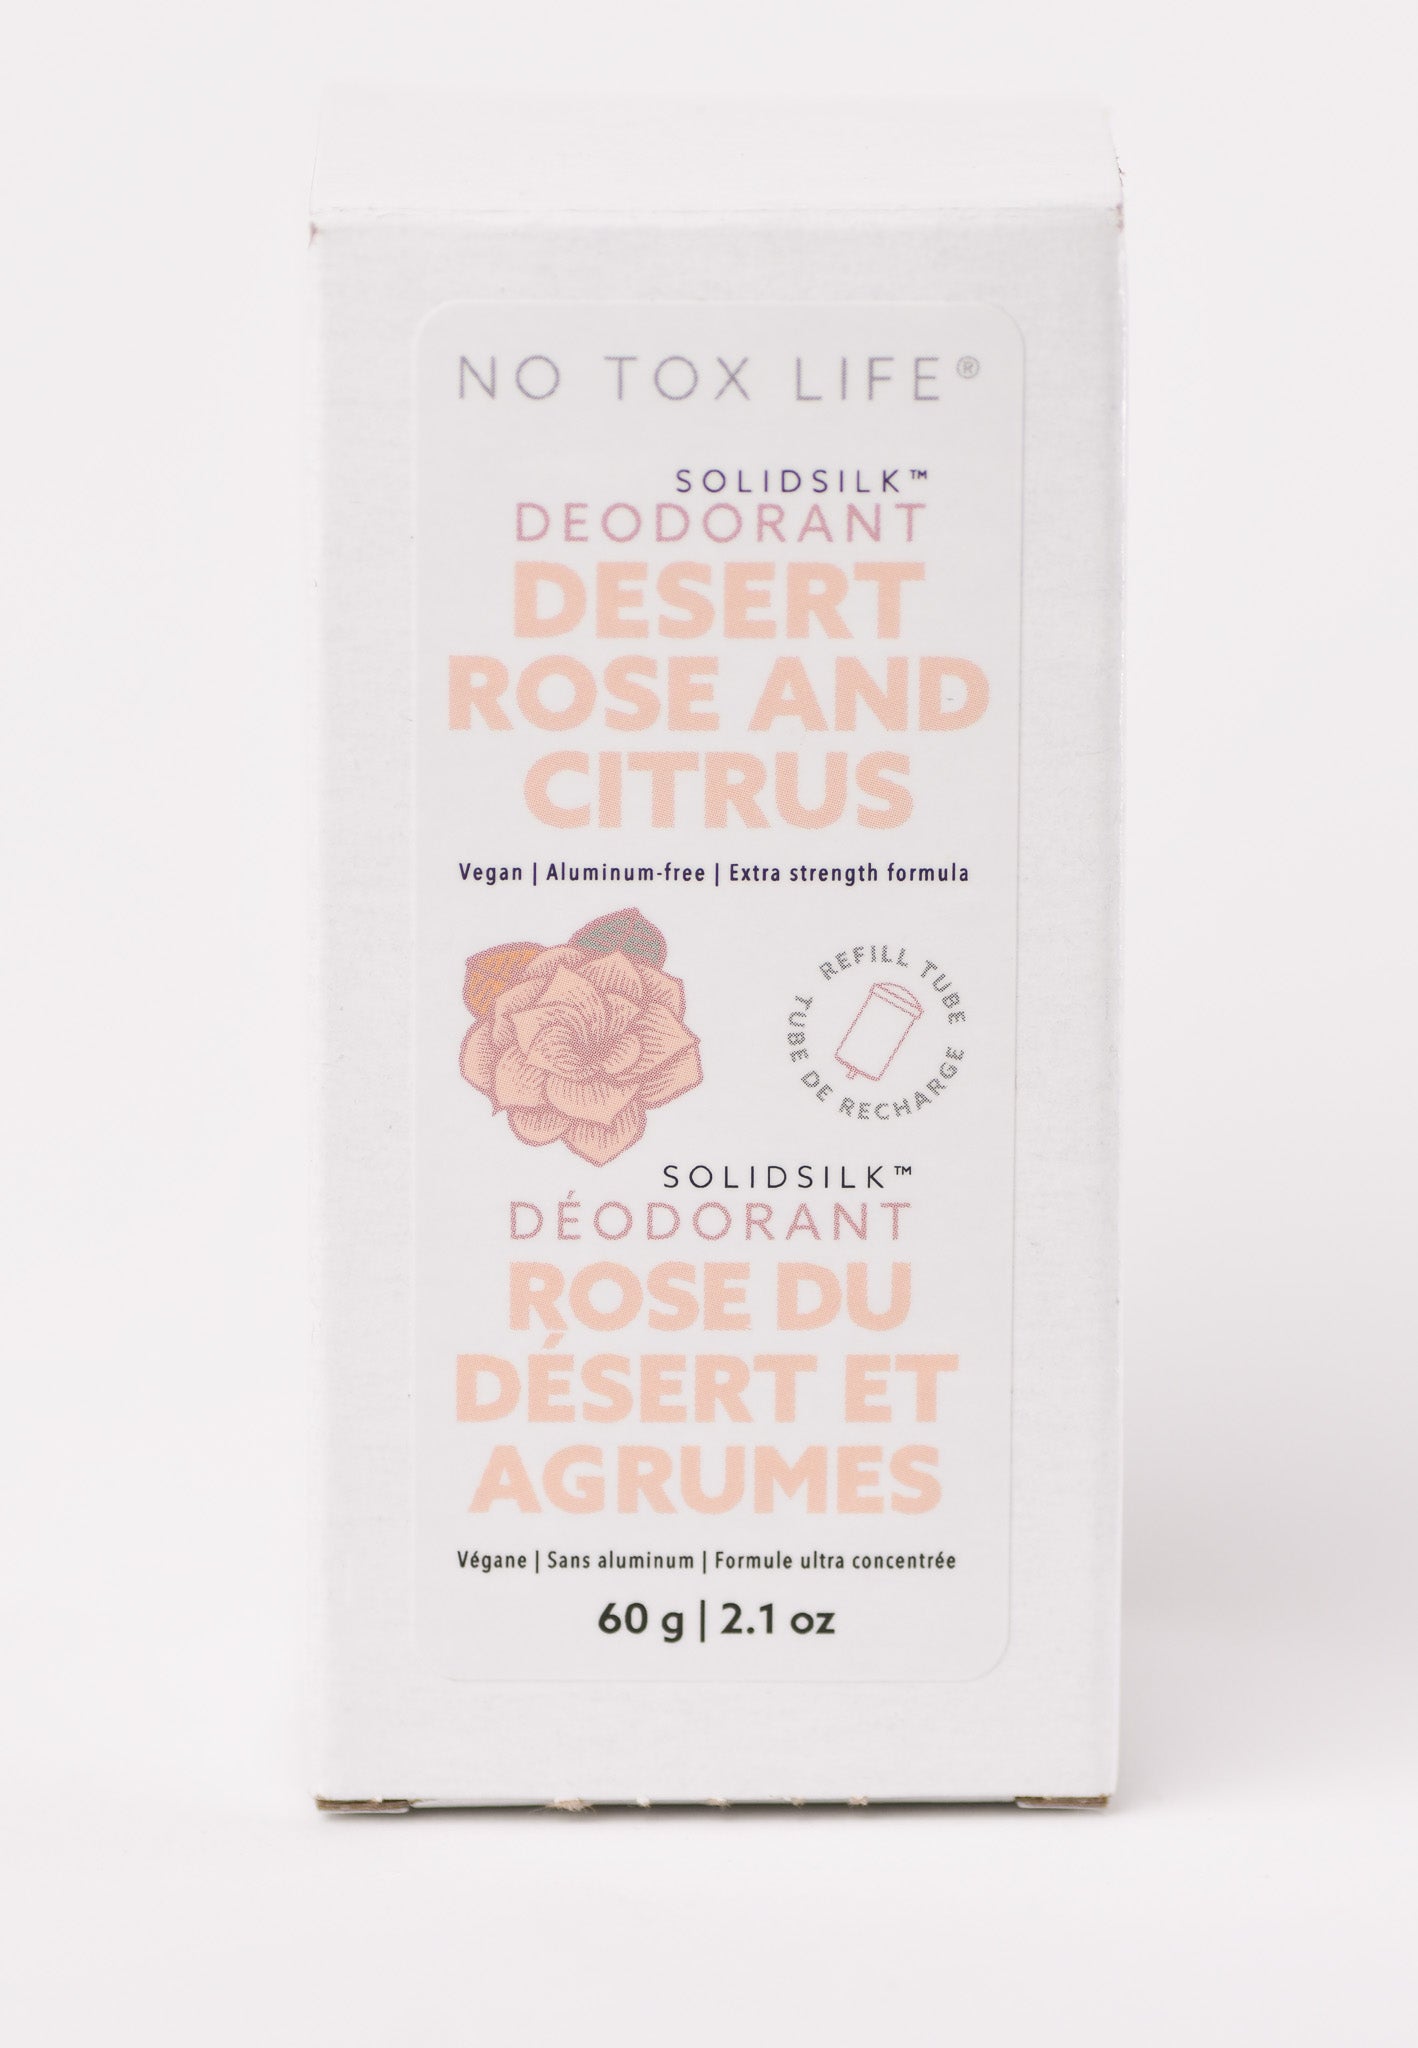 SOLIDSILK® Deodorant Refill Capsule (Desert Rose + Citrus) *ORIGINAL PACKAGING